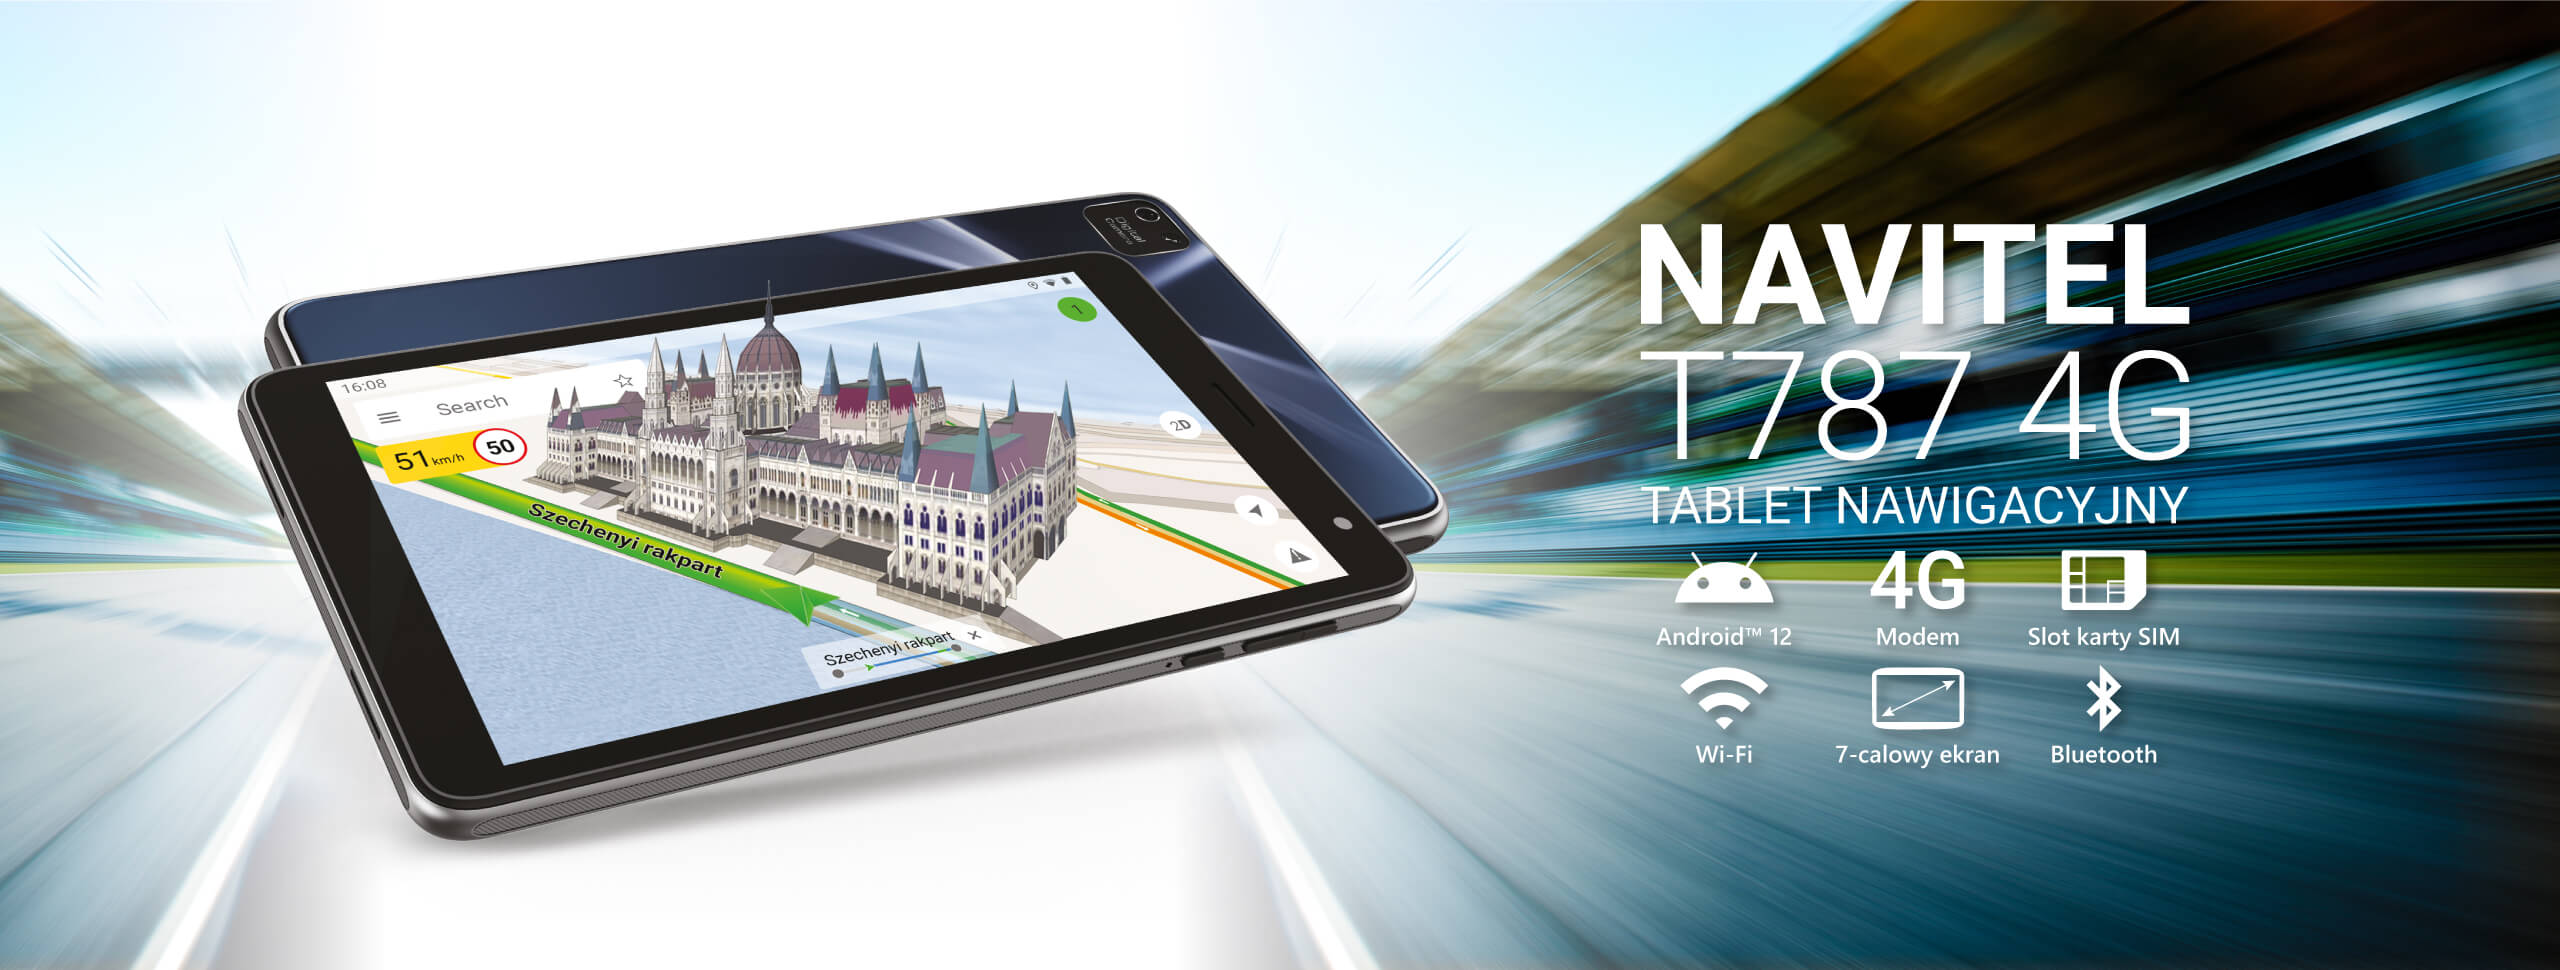 NAVITEL T787 4G – wielozadaniowy tablet nawigacyjny z 4G, Bluetooth i GPS